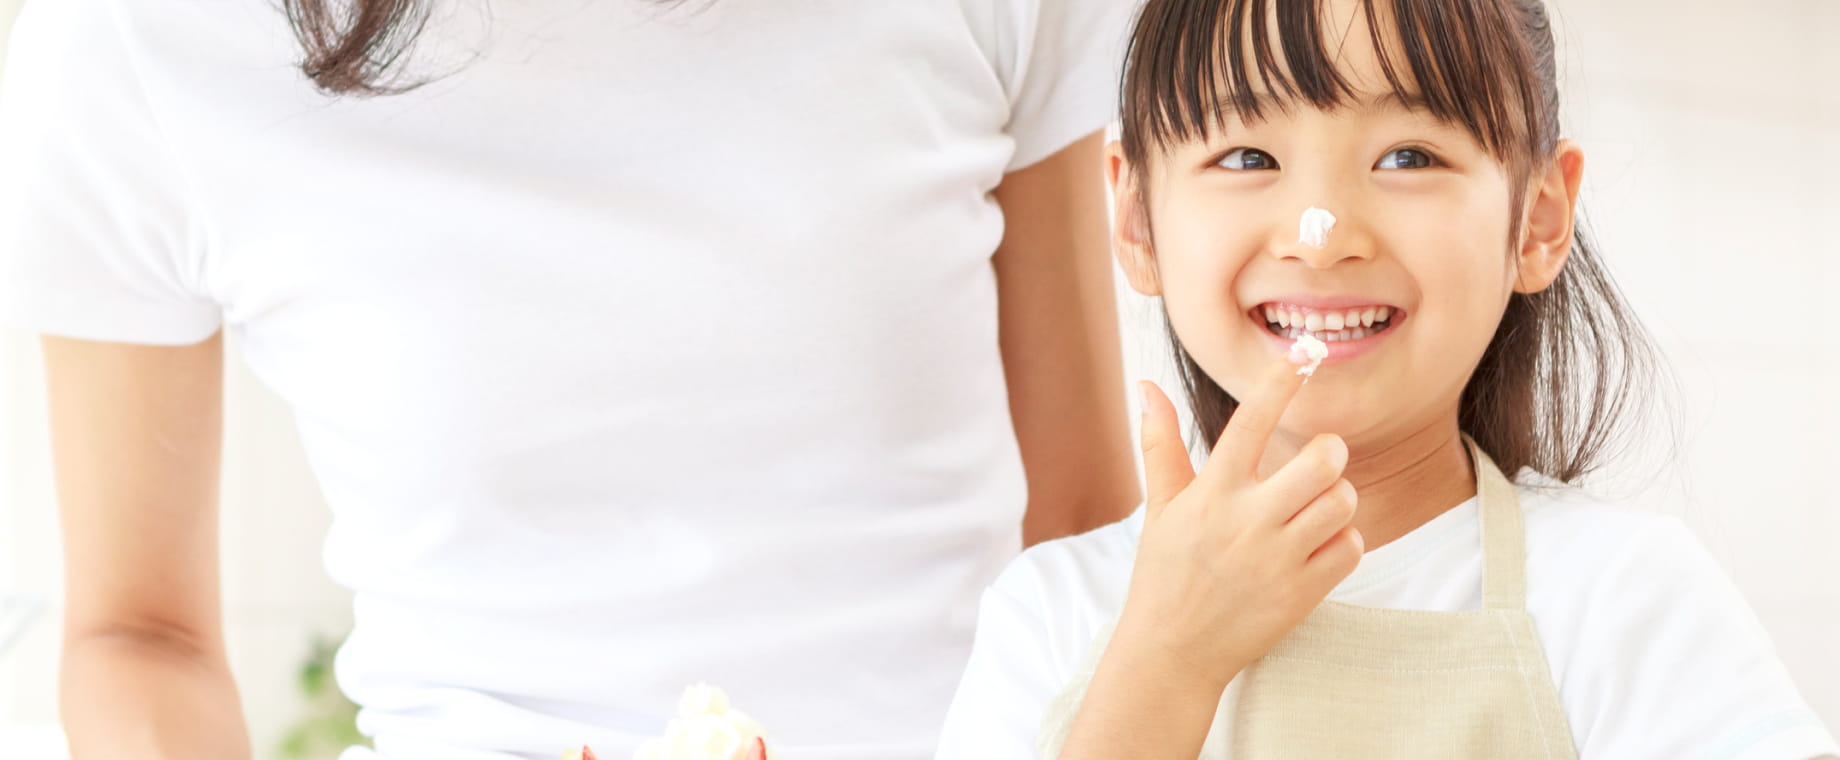 若い女性と小学生くらいの女の子がケーキを作っているシーン。女の子が笑顔でクリームを指につけて食べようとしている。